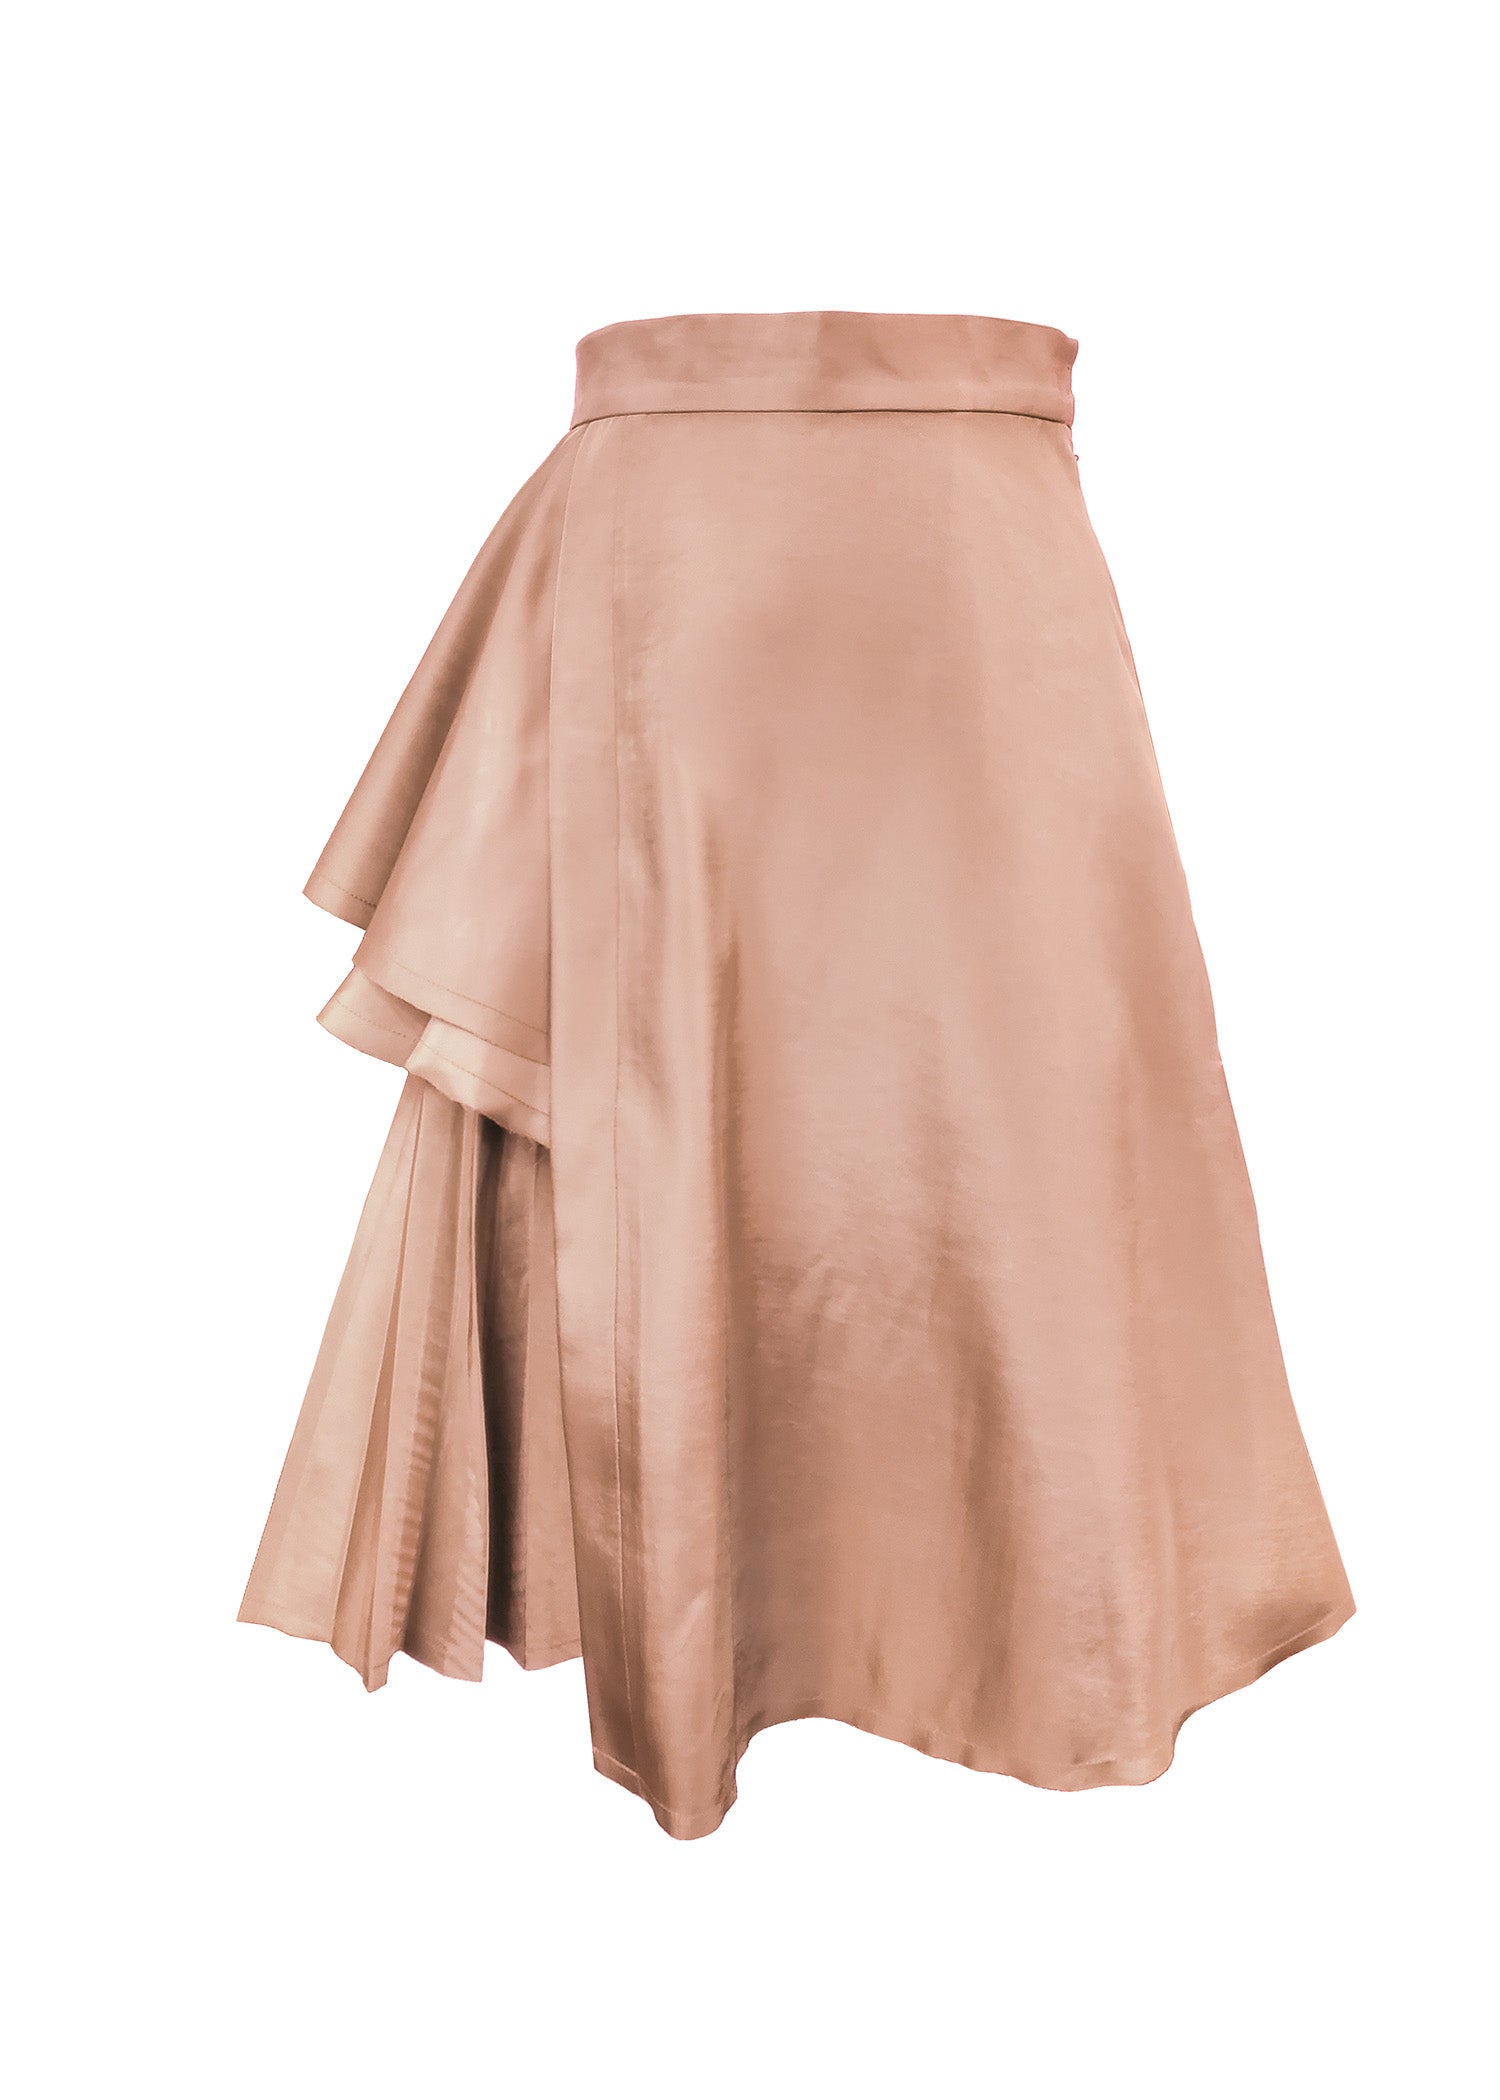 Women's Skirt - Aelios Skirt